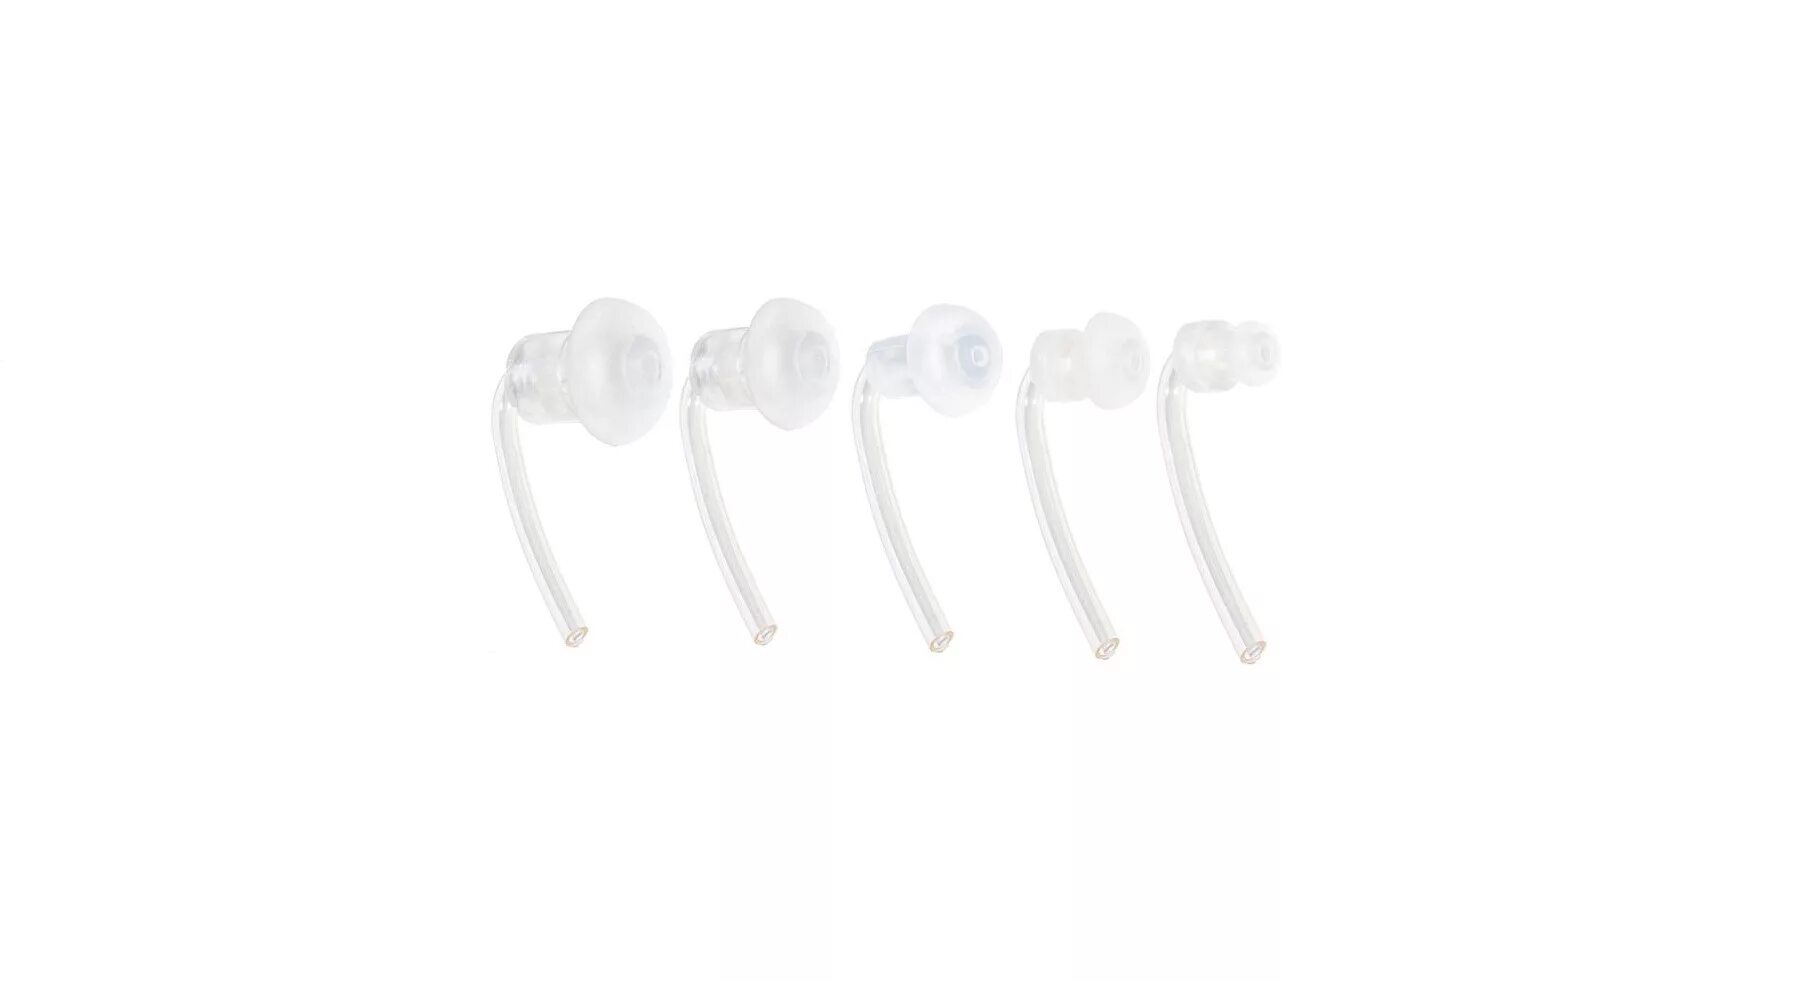 Ушной вкладыш для слухового. Индивидуальные ушные вкладыши для слуховых аппаратов Slim Tip для Audeo(8519). Термософт ушной вкладыш. Вкладыши для слуховых аппаратов Phonak. Ушной вкладыш для Phonak.